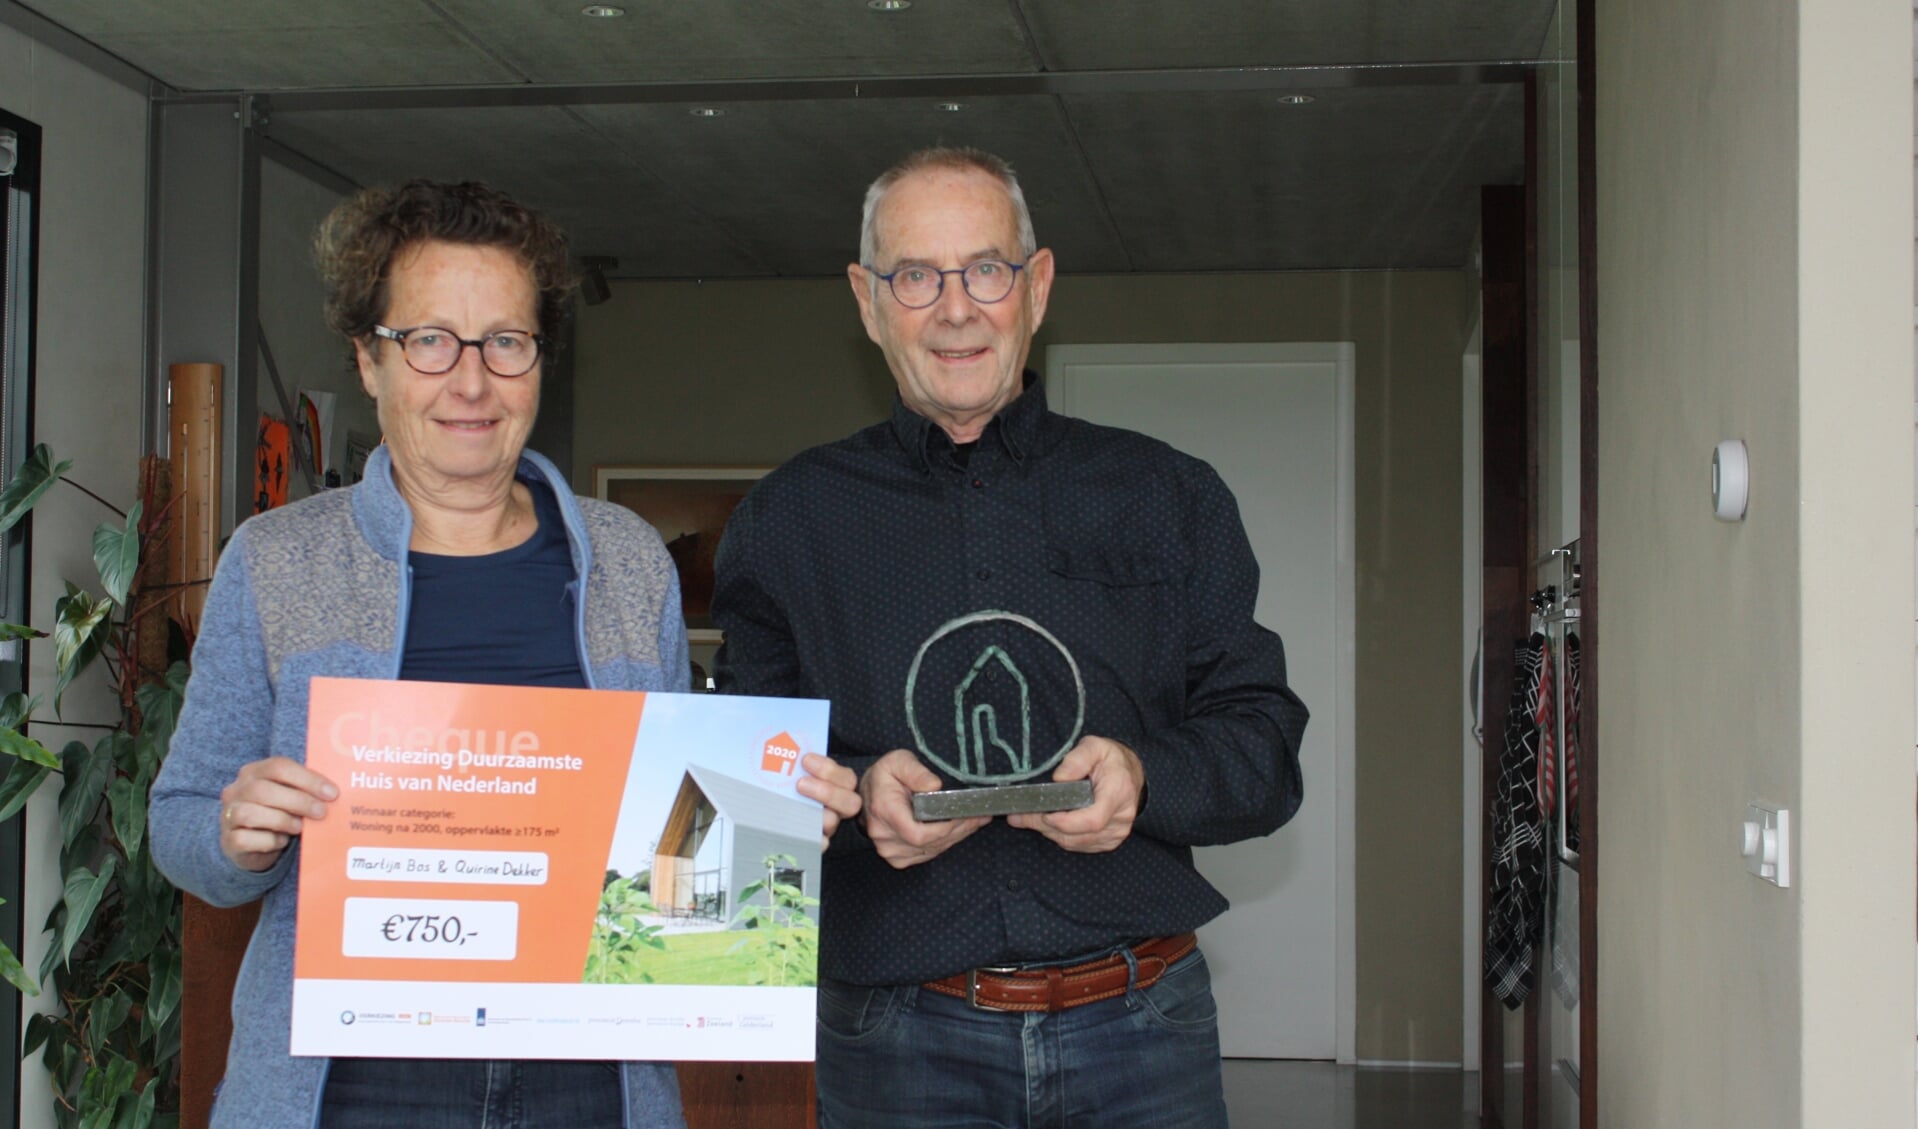 Martijn Bos en Quirine Dekker wonnen met hun nul-op-de-meter woning de titel 'Duurzaamste huis van Nederland' in de categorie na 2000 met een inhoud >175m2. Eigen foto